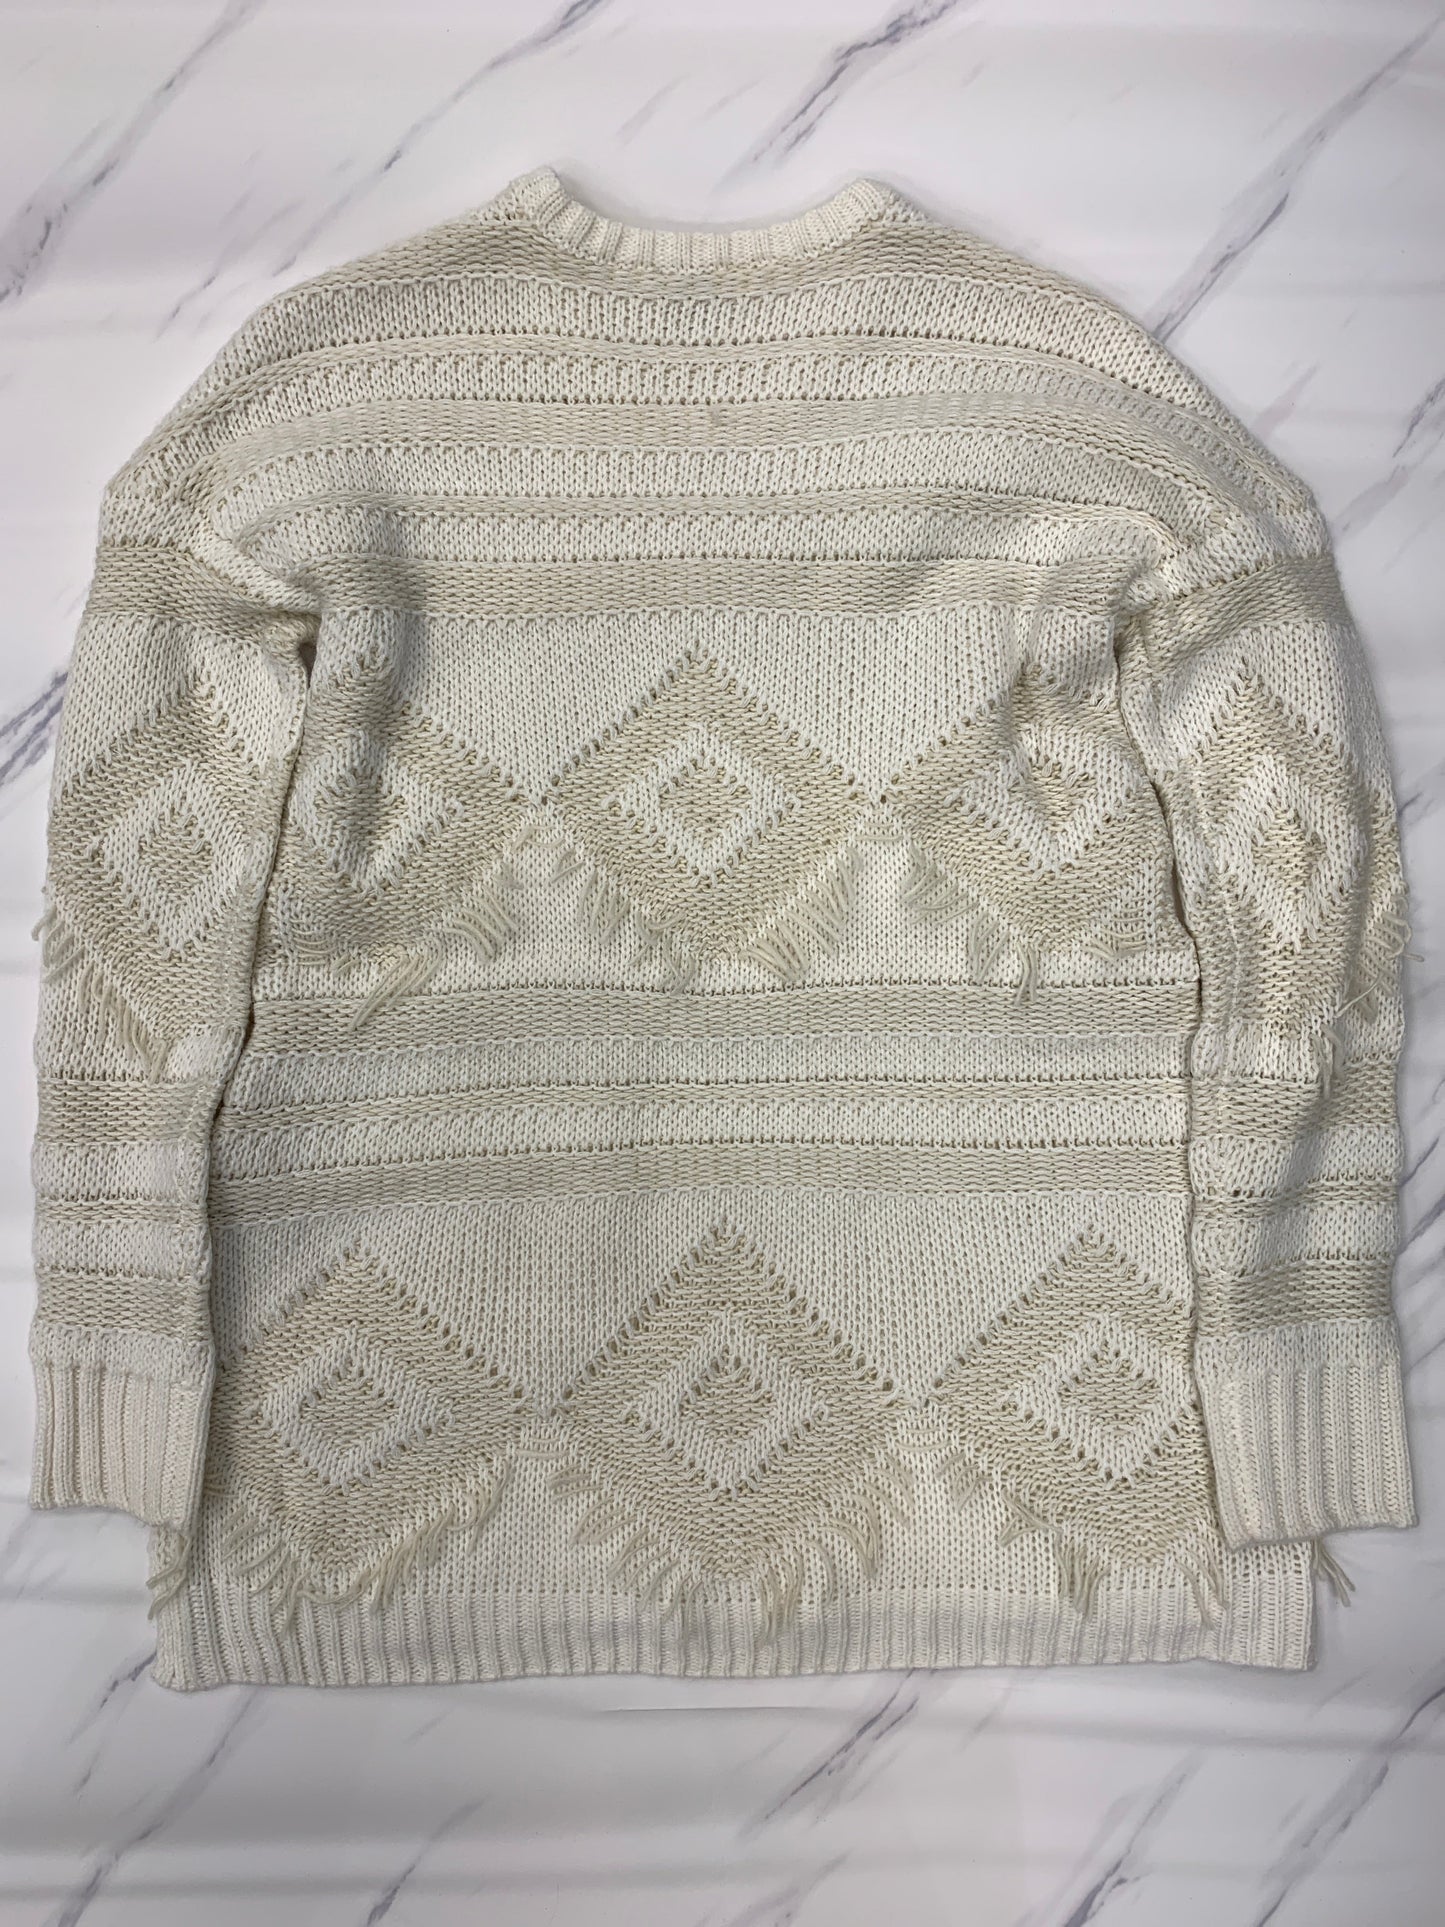 Sweater By Mumu  Size: Xs